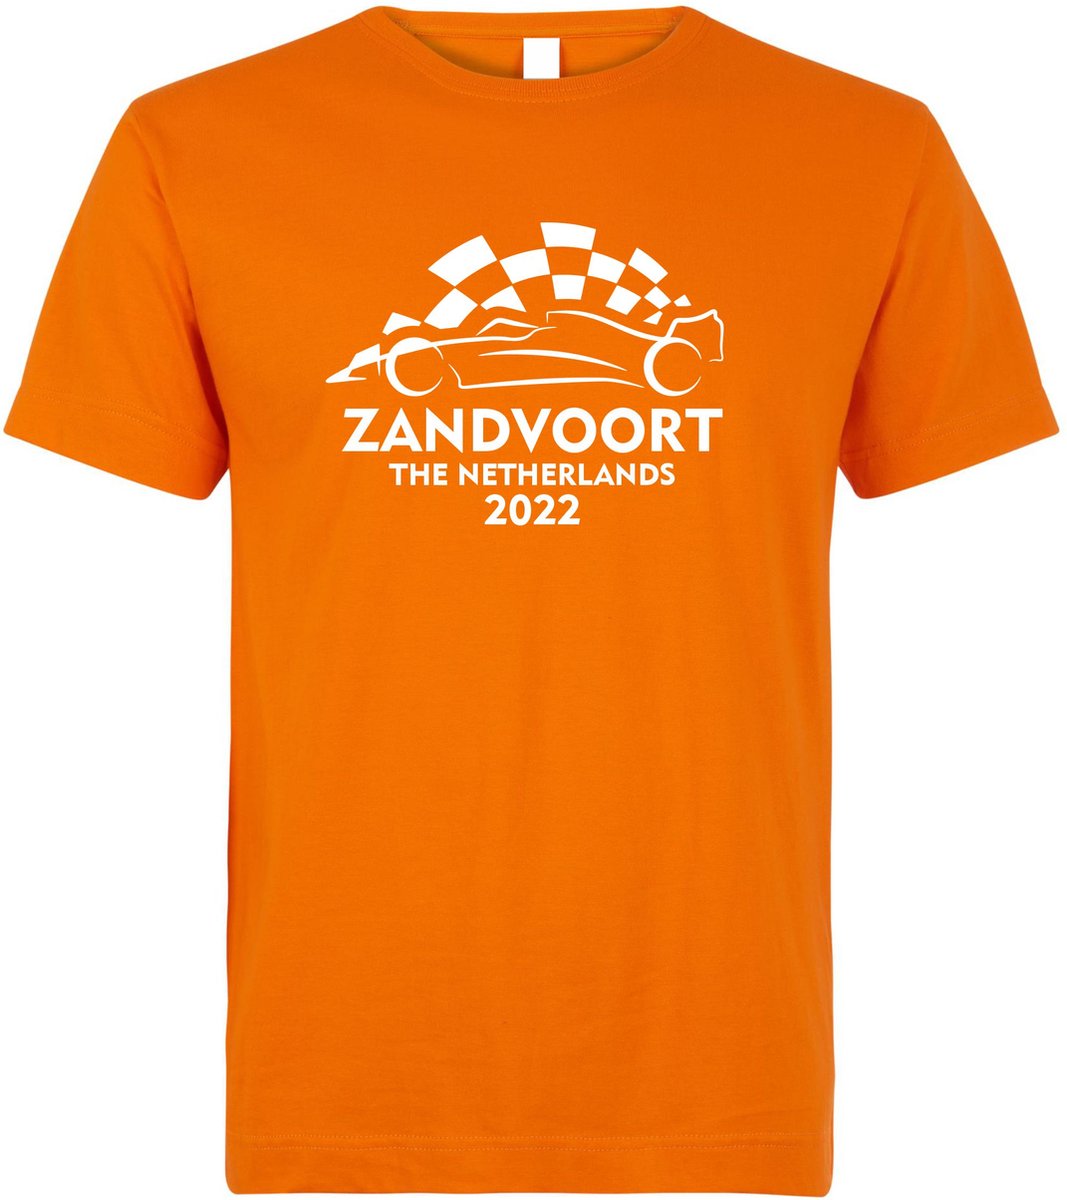 T-shirt Zandvoort The Netherlands 2022 met raceauto | Max Verstappen / Red Bull Racing / Formule 1 fan | Grand Prix Circuit Zandvoort | kleding shirt | Oranje | maat 4XL